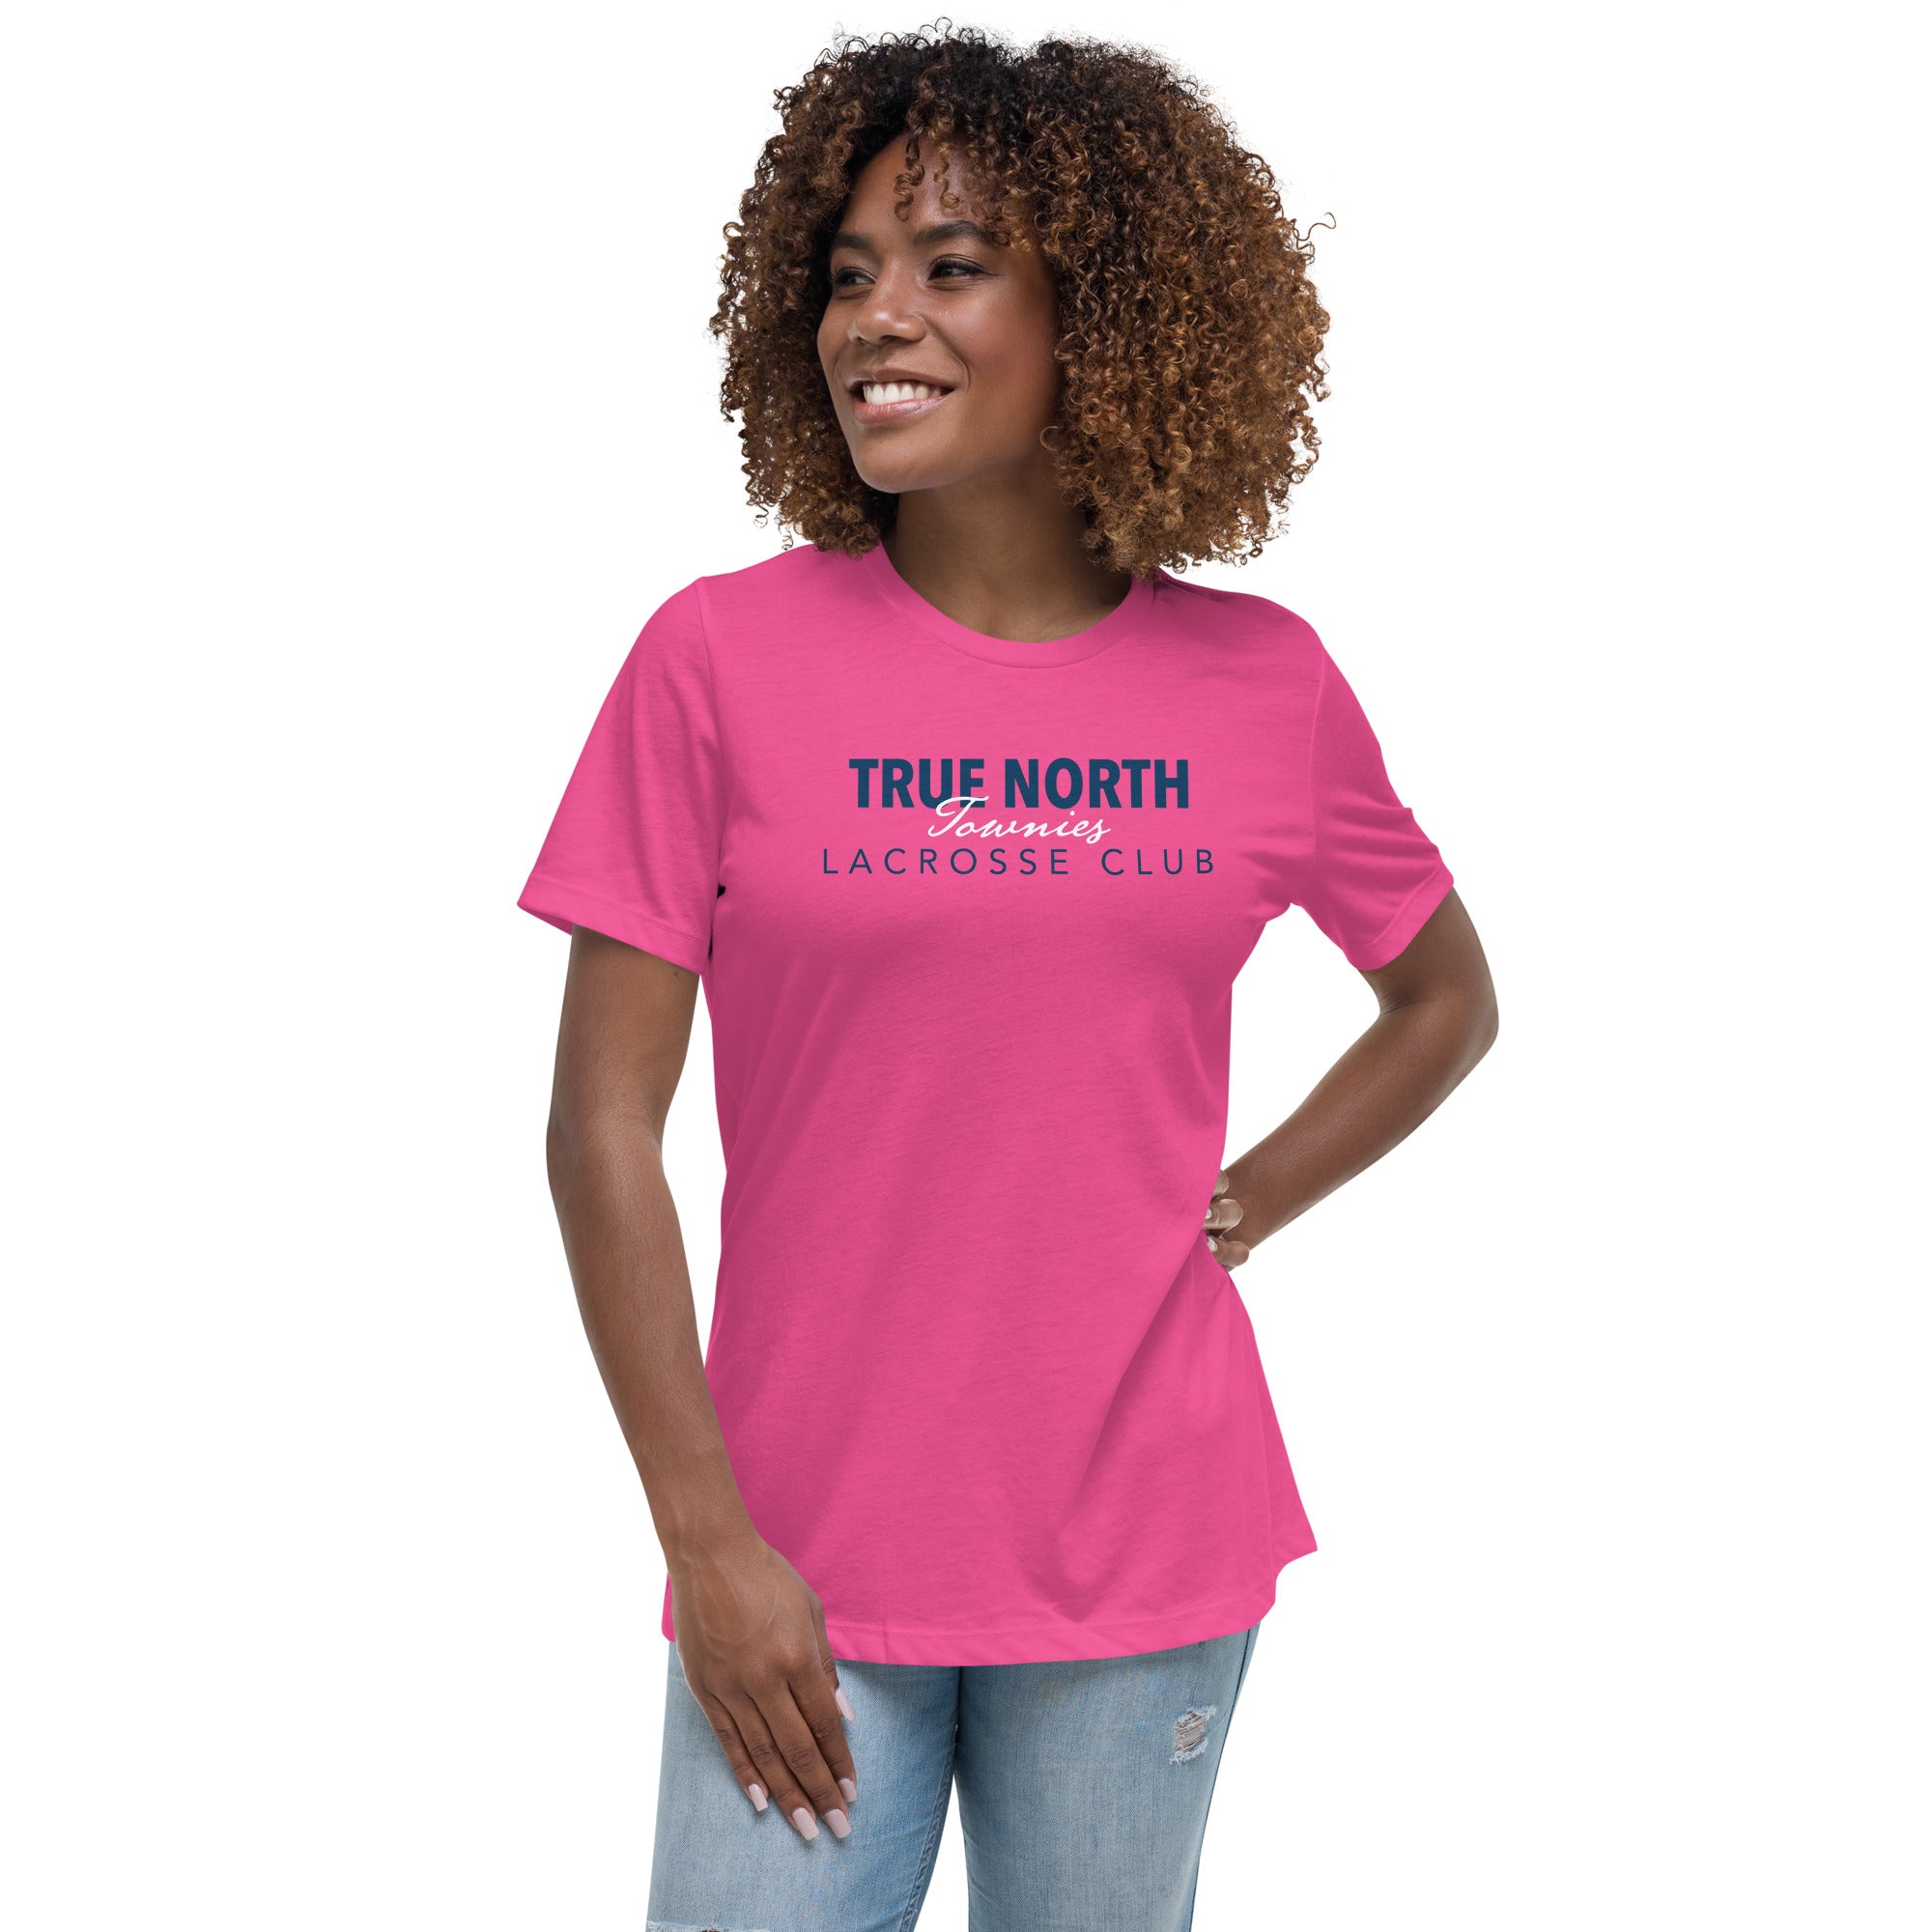 Townies Women's Relaxed T-Shirt